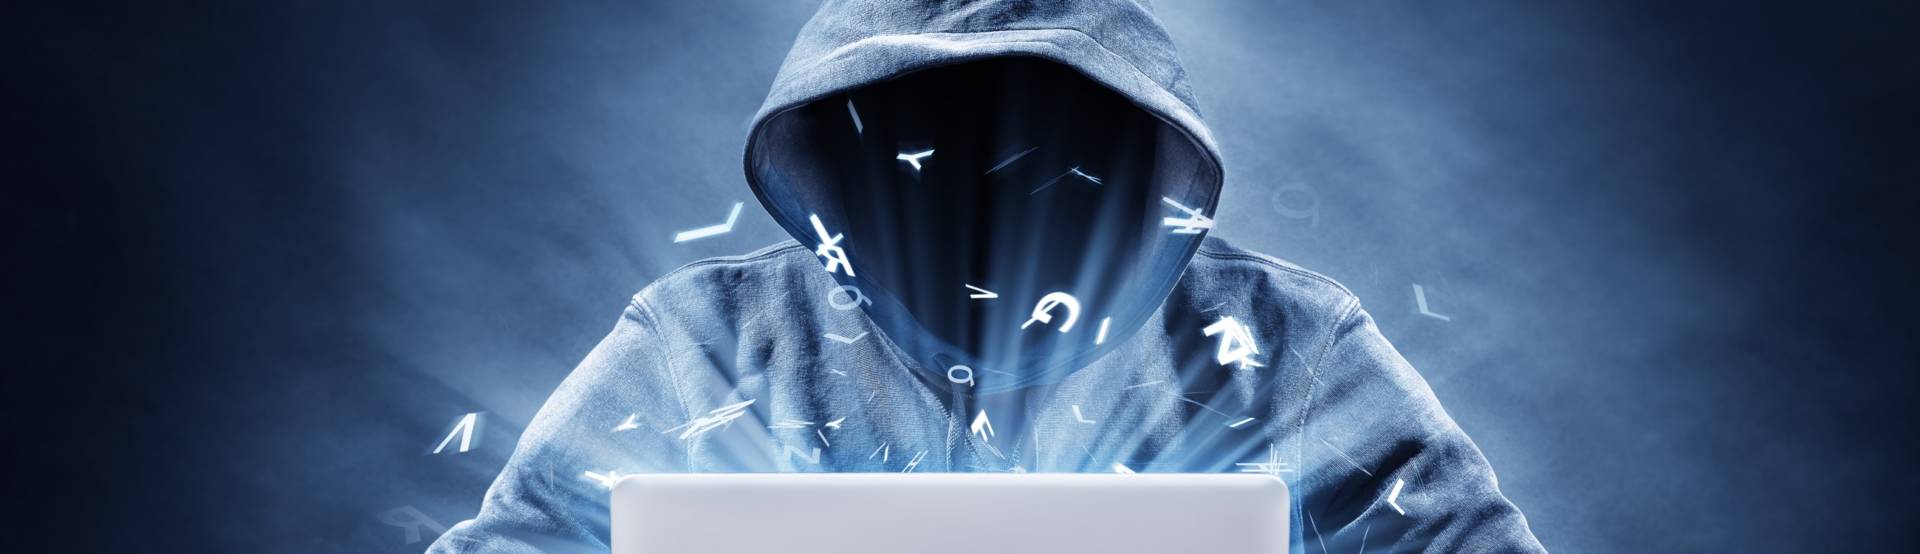 Microsoft attaccata da hacker russi, colpite le email dei dirigenti